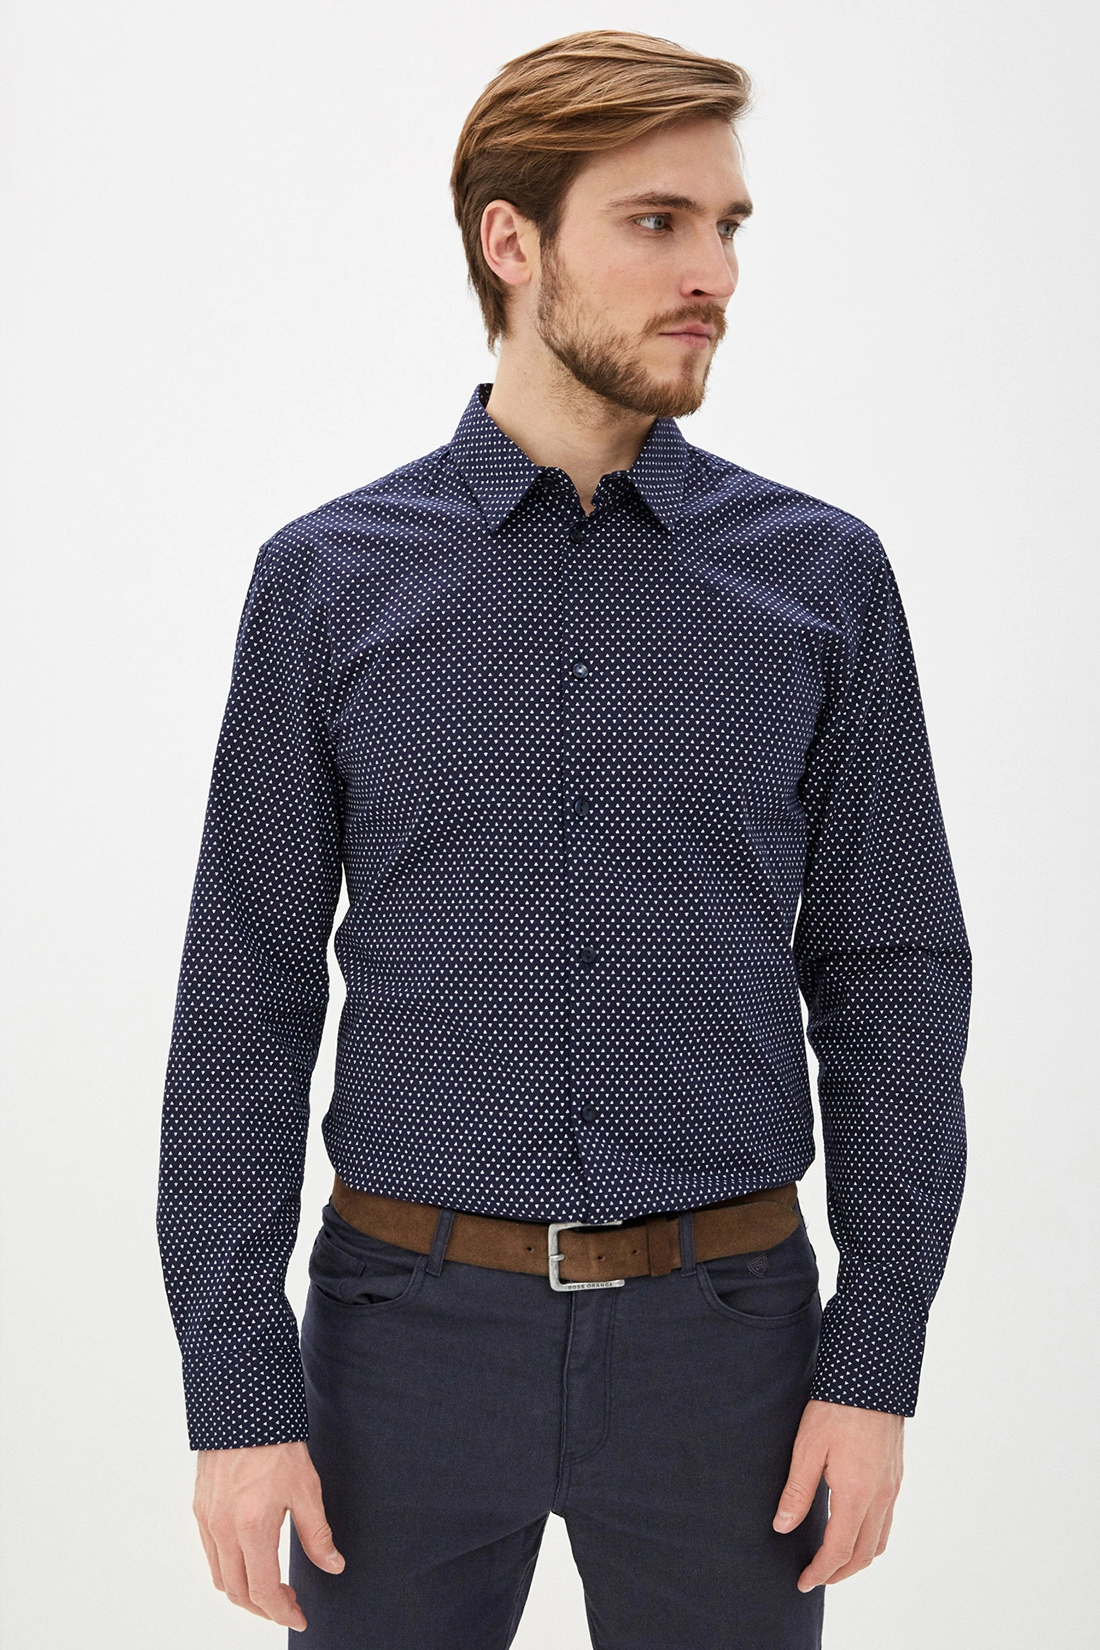 Классическая рубашка с принтом (арт. baon B660012), размер L, цвет синий Классическая рубашка с принтом (арт. baon B660012) - фото 1